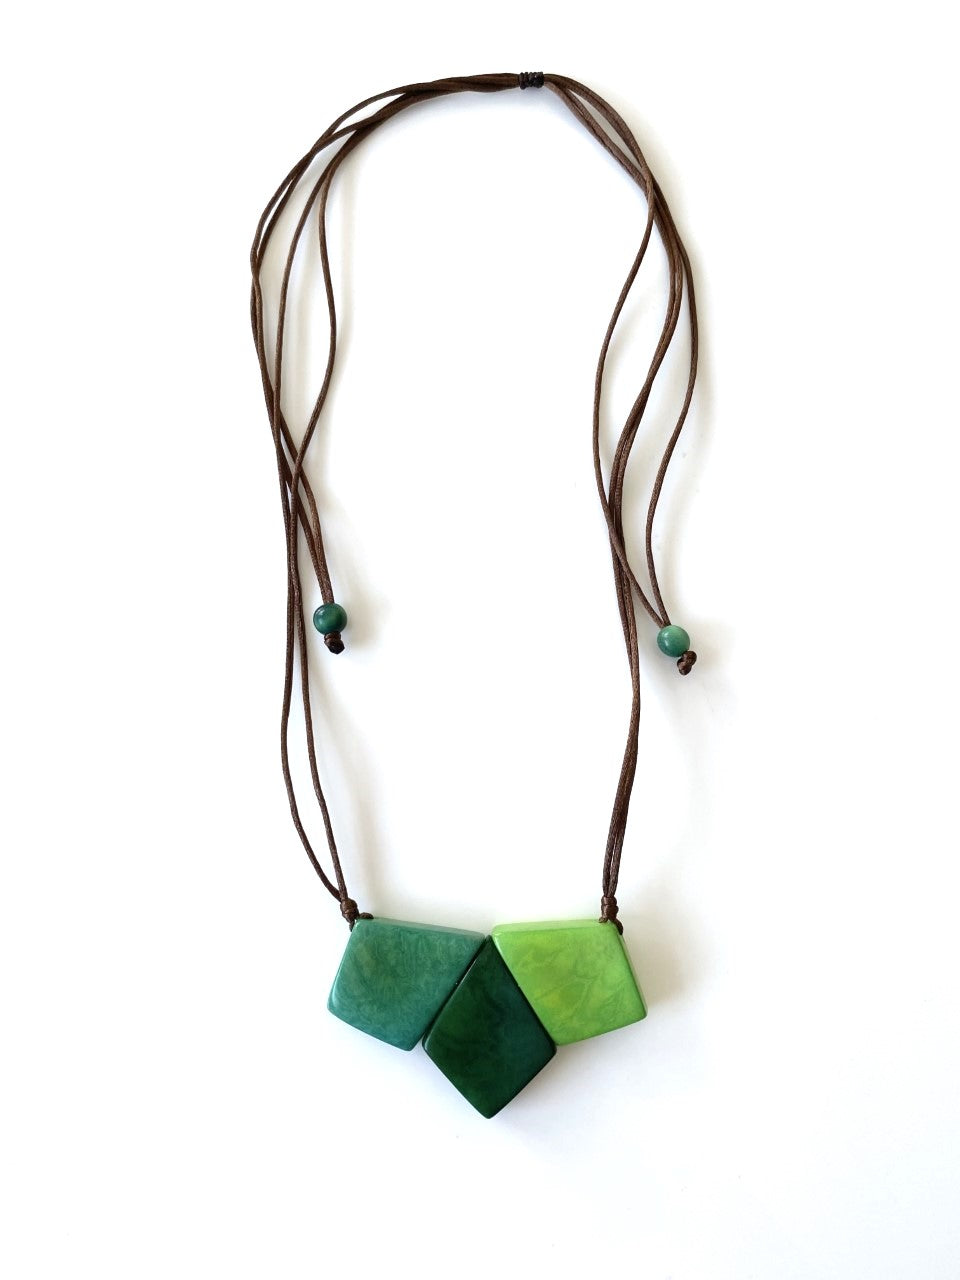 Tridiamante Necklace - Green Tones